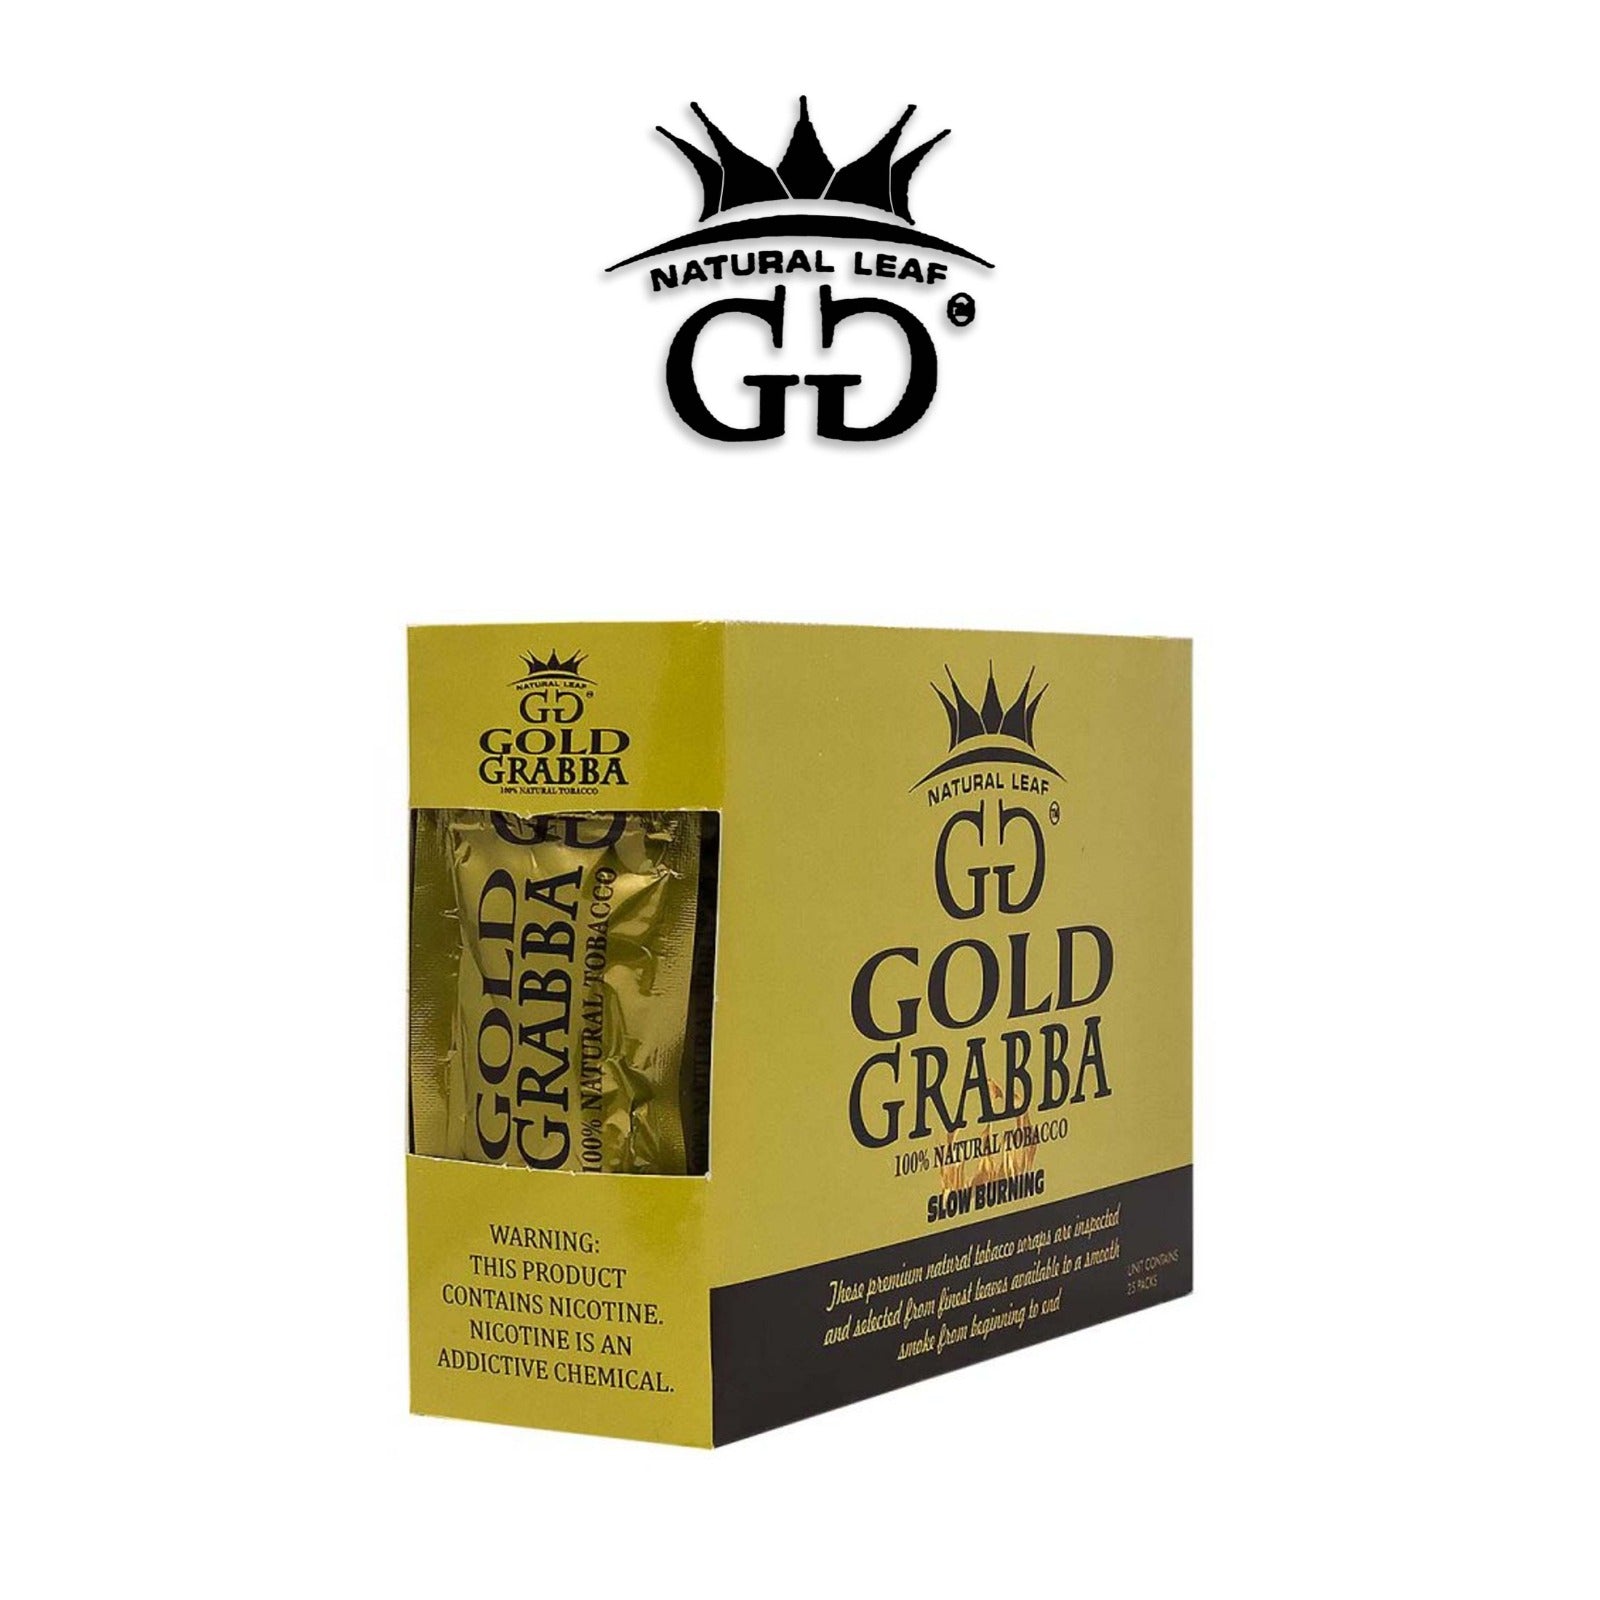 GG Dark Grabba Cigar Leaf 25Ct - Buitrago Cigars